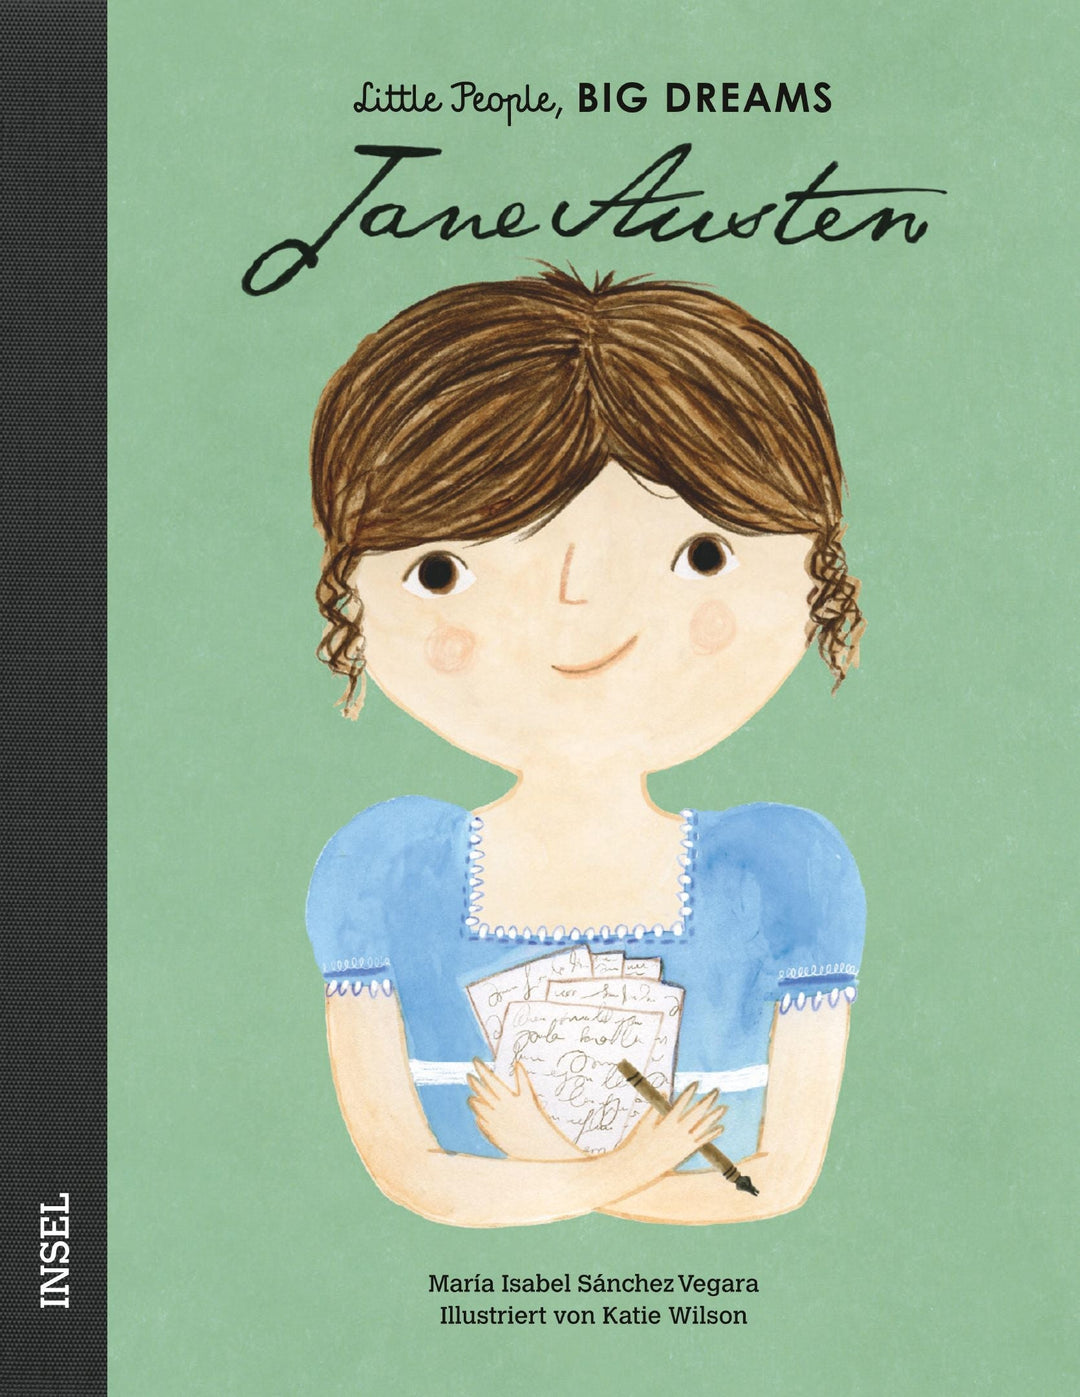 Insel Verlag Bilderbuch Little People, Big Dreams auf Deutsch: Jane Austen